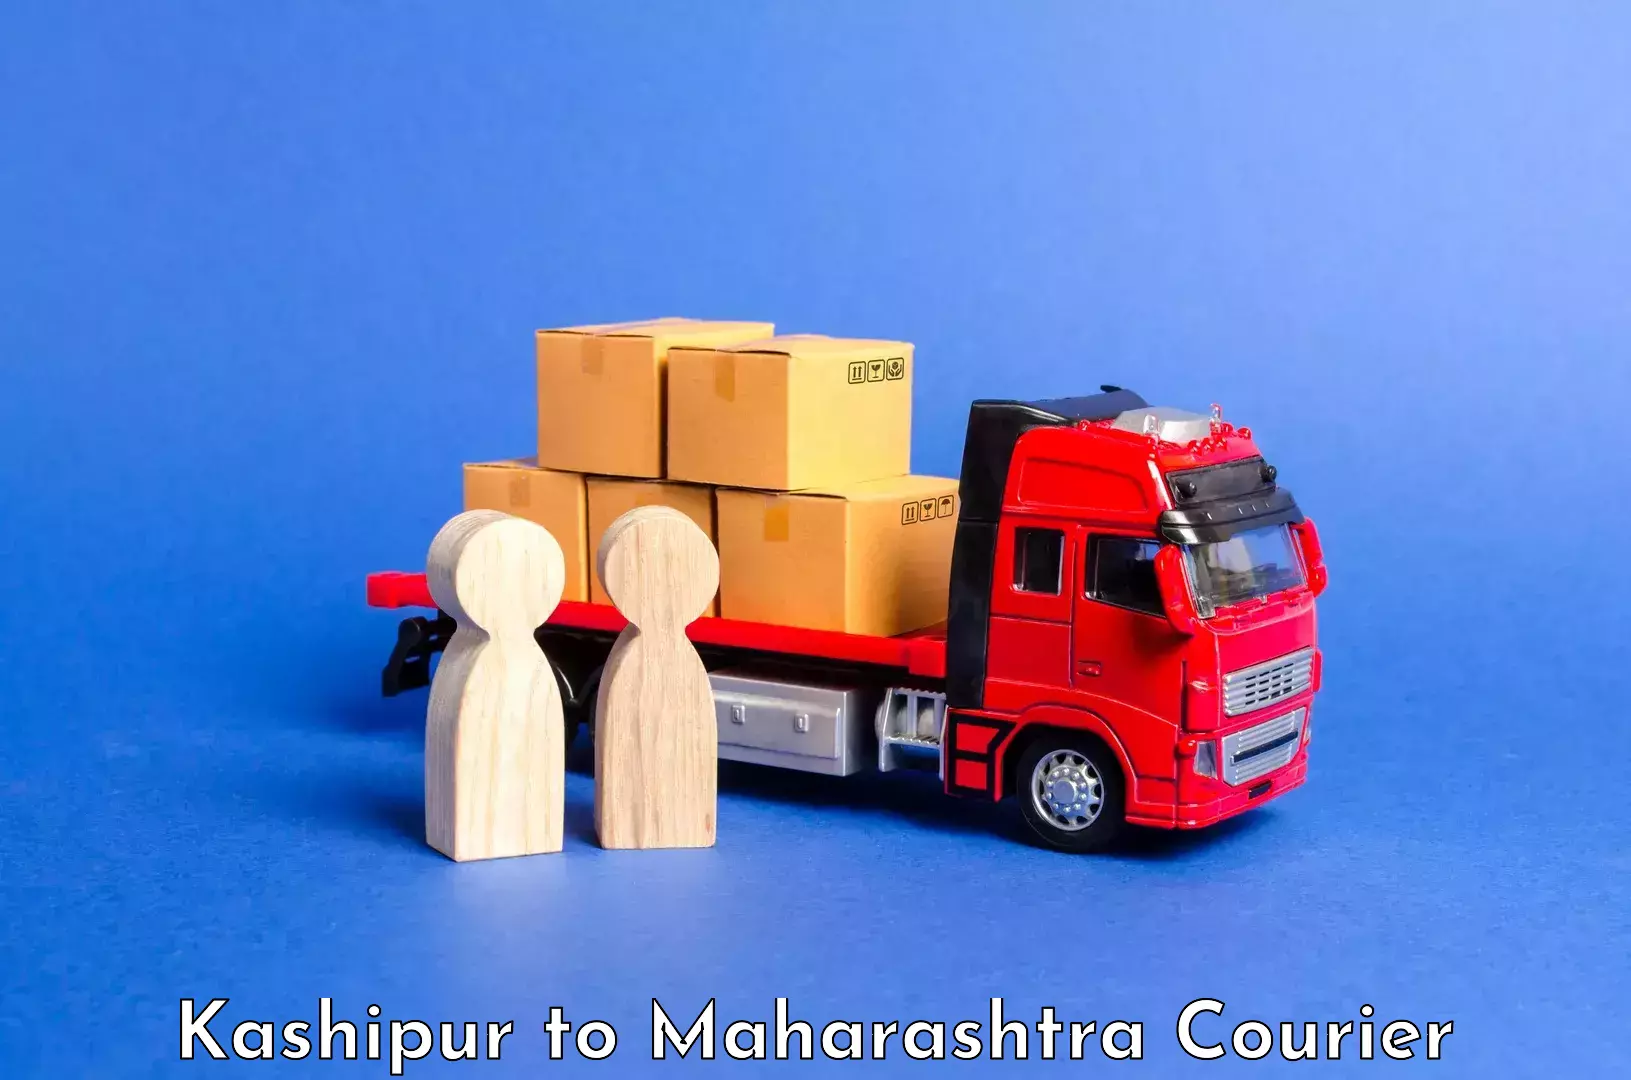 Luggage transport consultancy Kashipur to Maharashtra